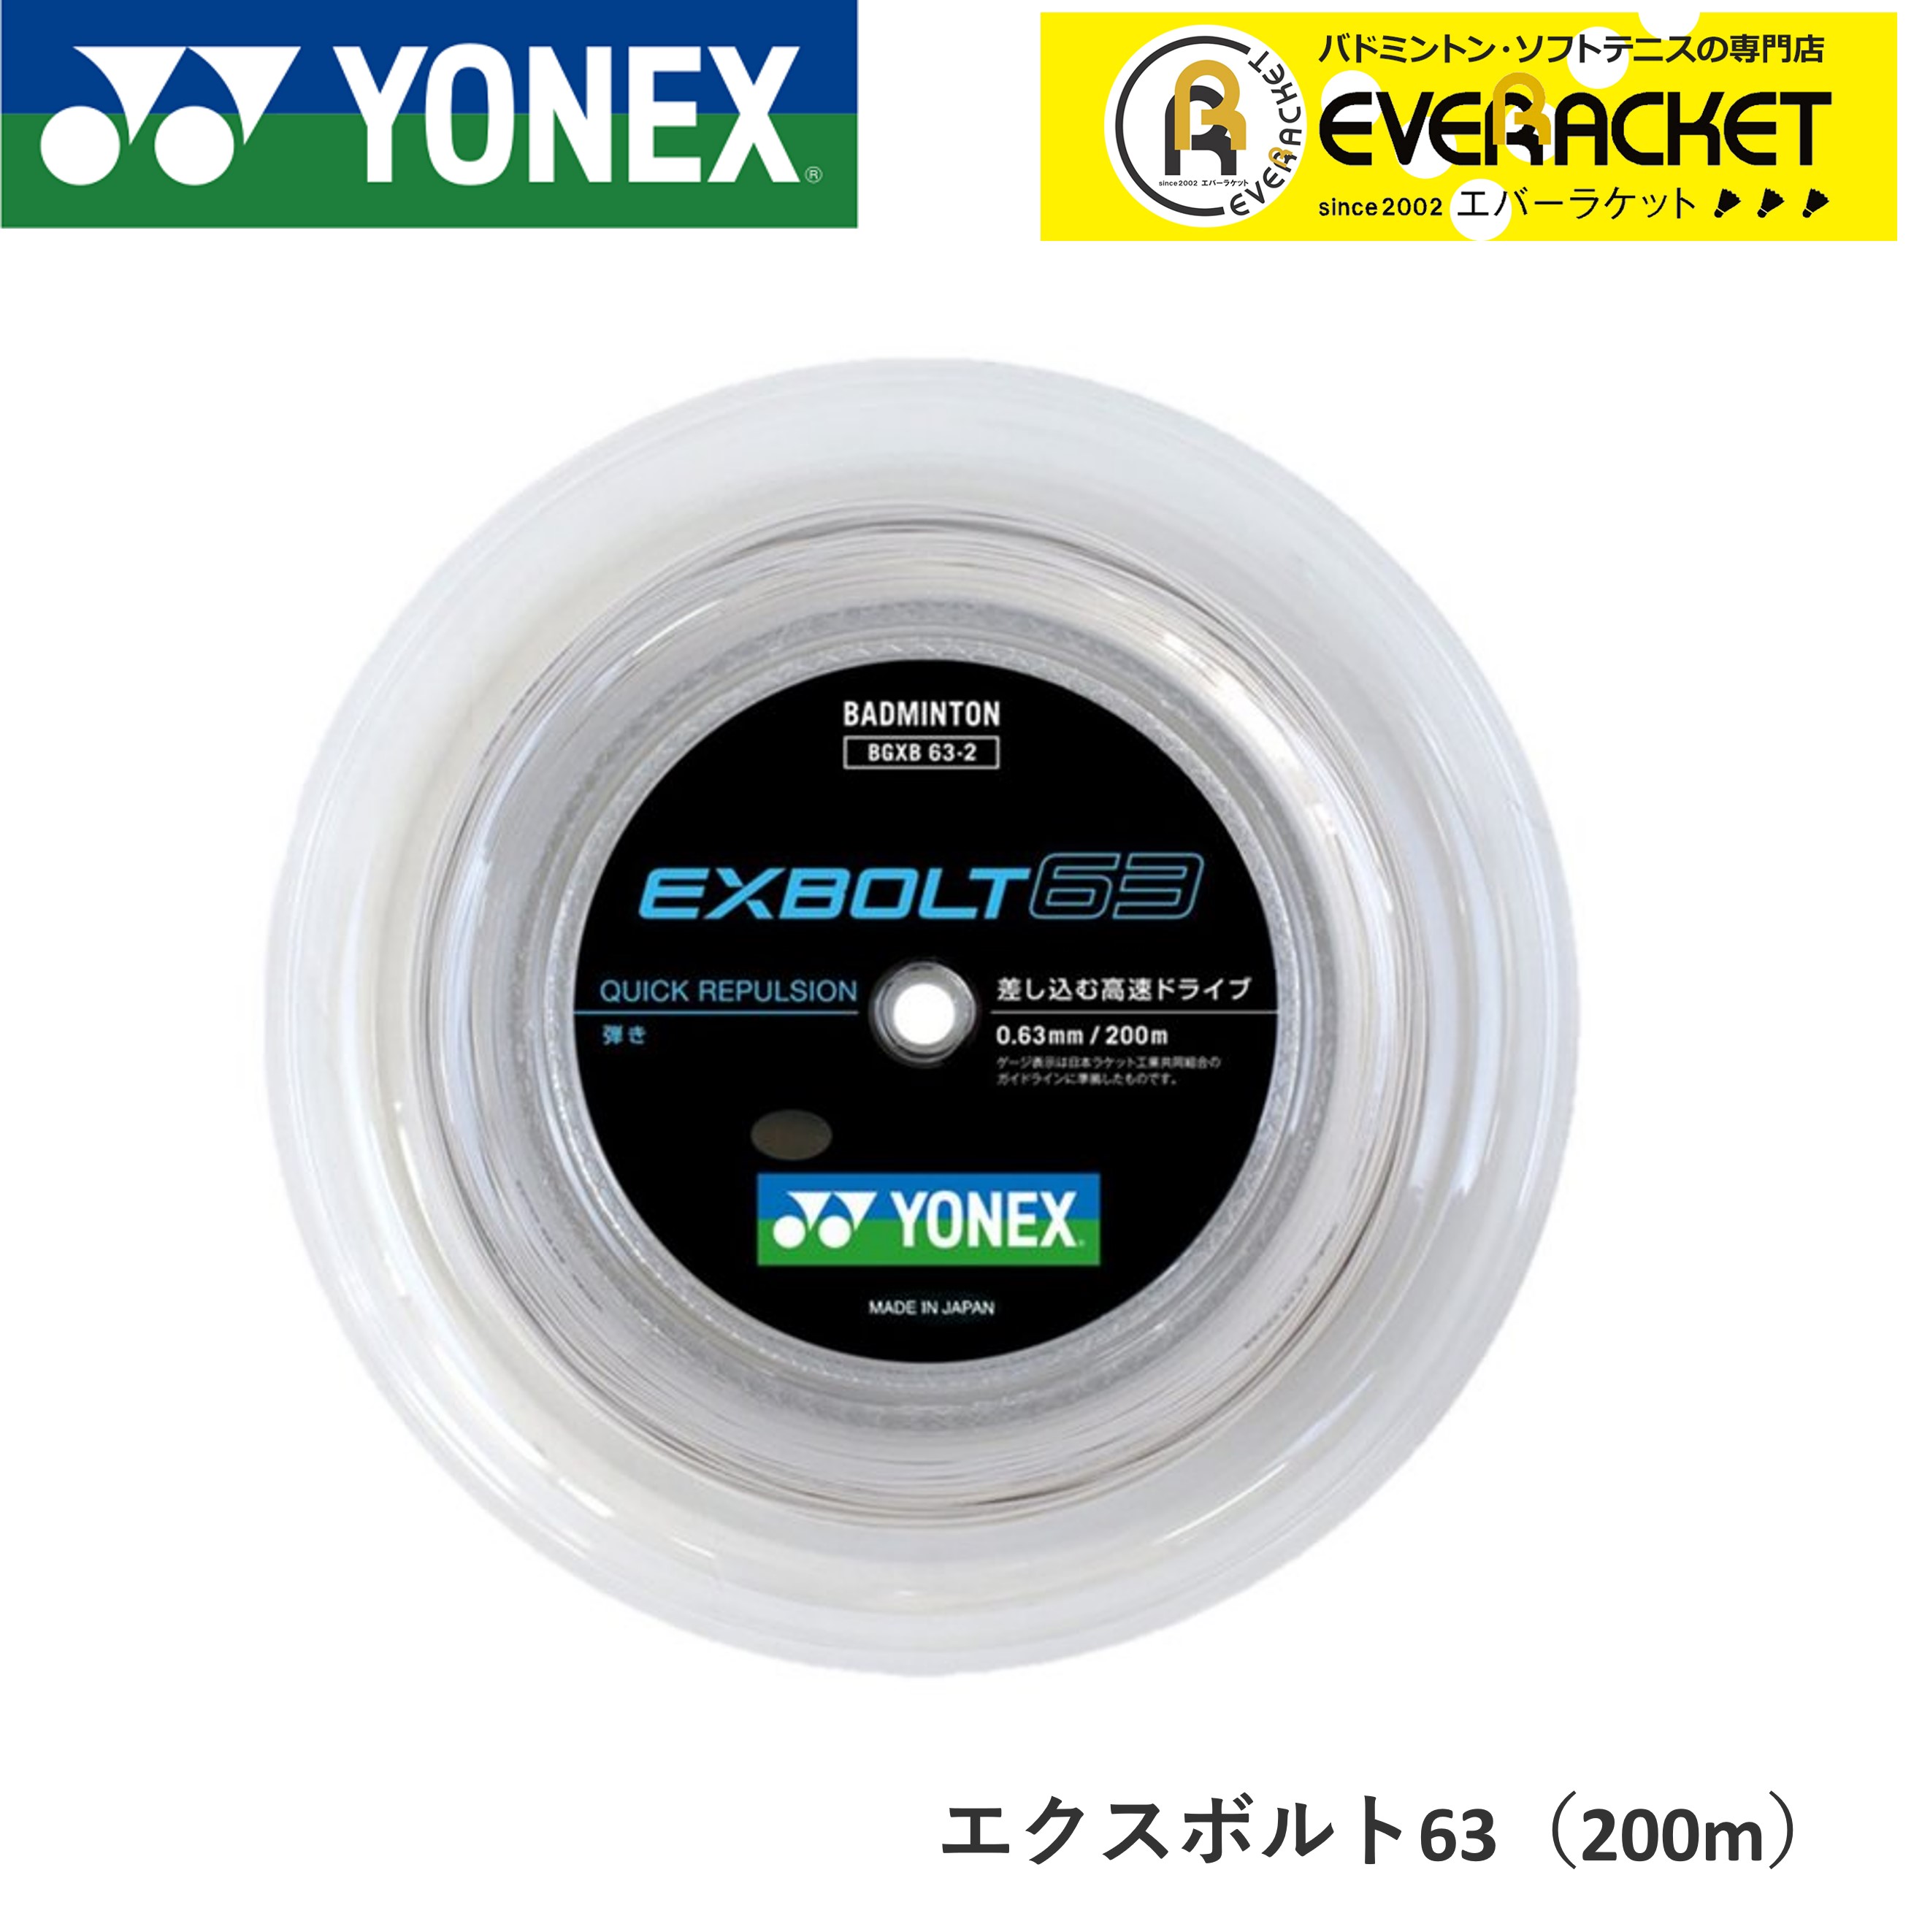 ヨネックス EXBOLT 65 ホワイト 200mロール エクスボルト65